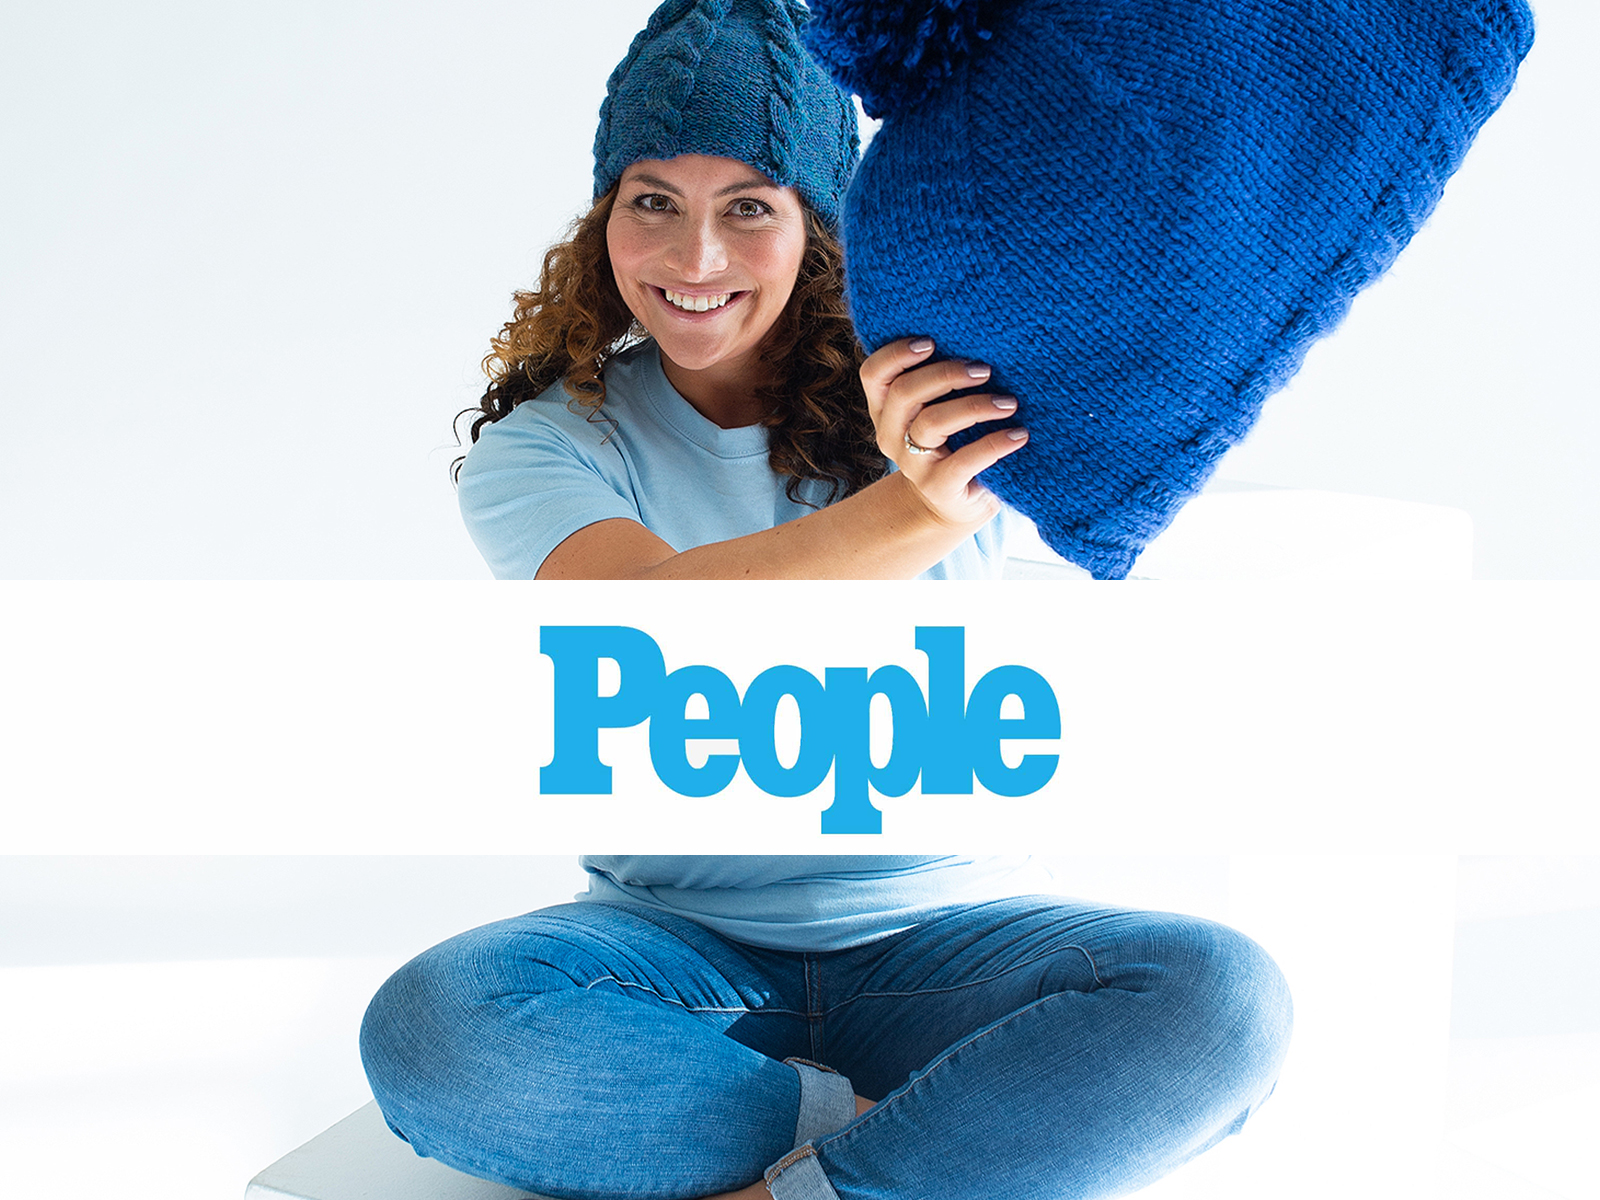 People Magazine logo overlaid on image of Shira